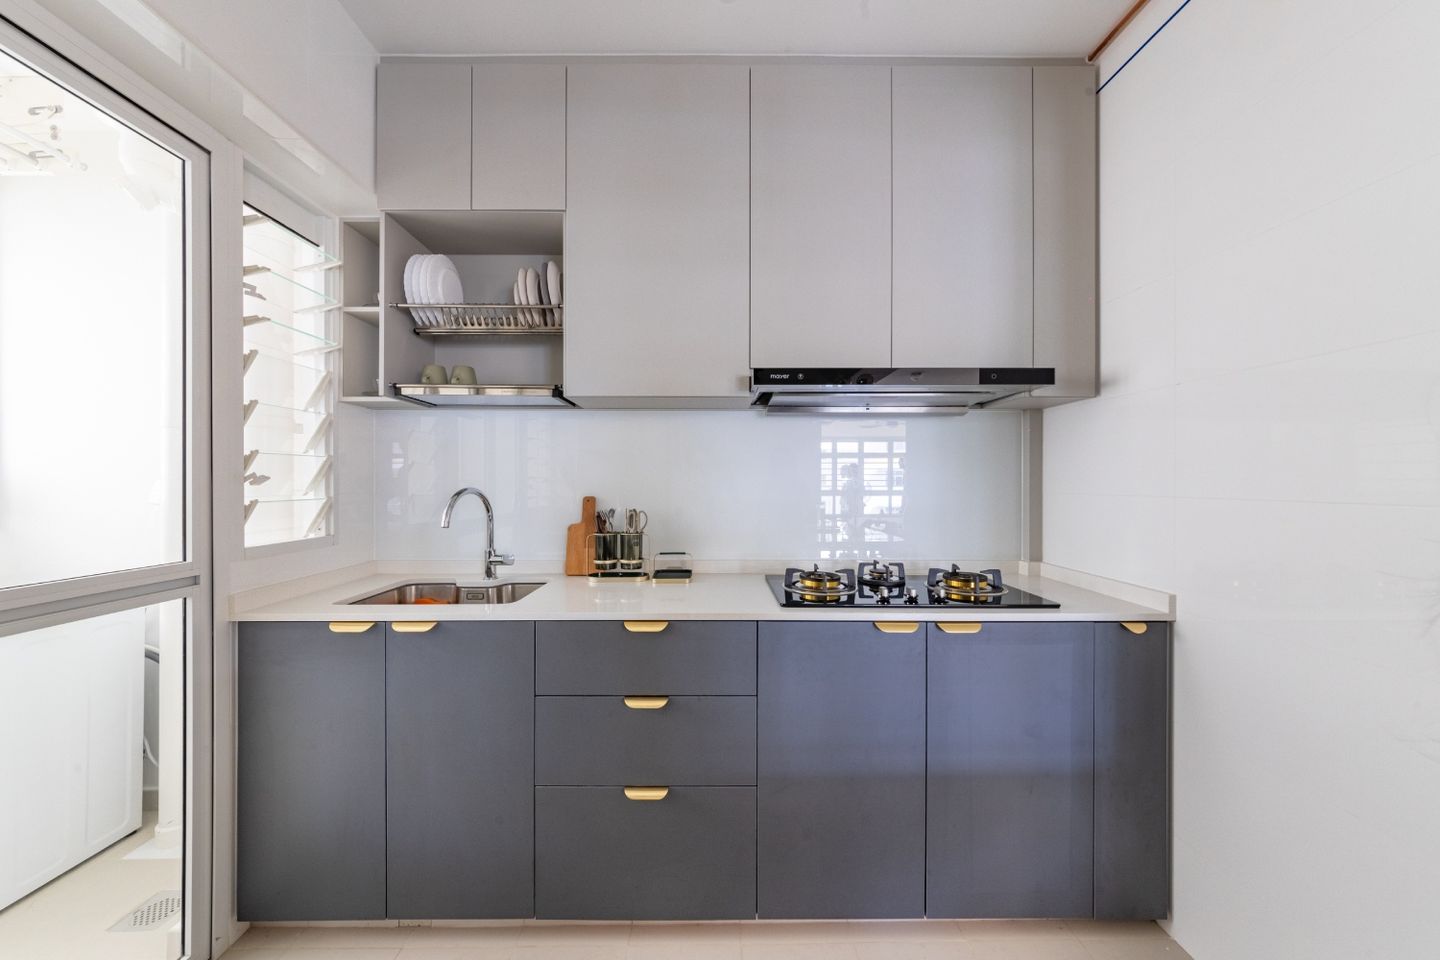 Minimal Kitchen Design With Grey Storage Cabinets - Livspace